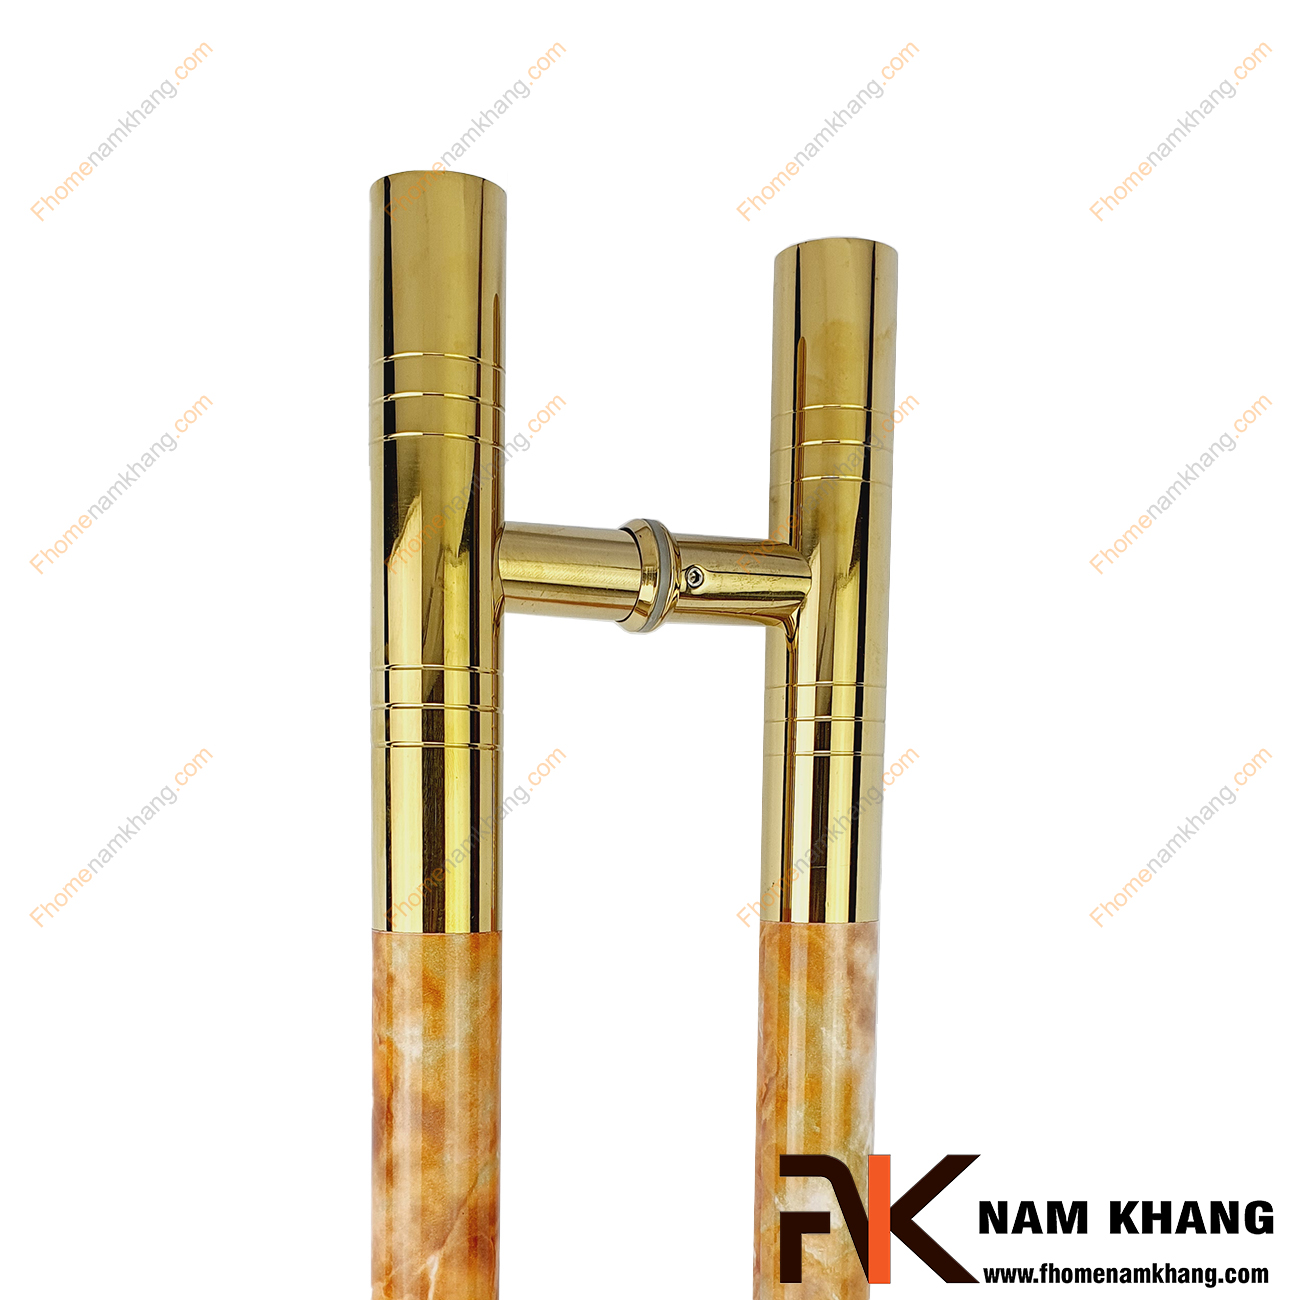 Tay nắm cửa chính màu vàng bóng phối vân đá cam NKC014-CV được sản xuất từ chất liệu cao cấp, có kích thước lớn chuyên dùng cho cửa kính, cửa gỗ, cửa 2 hoặc 4 cánh,...